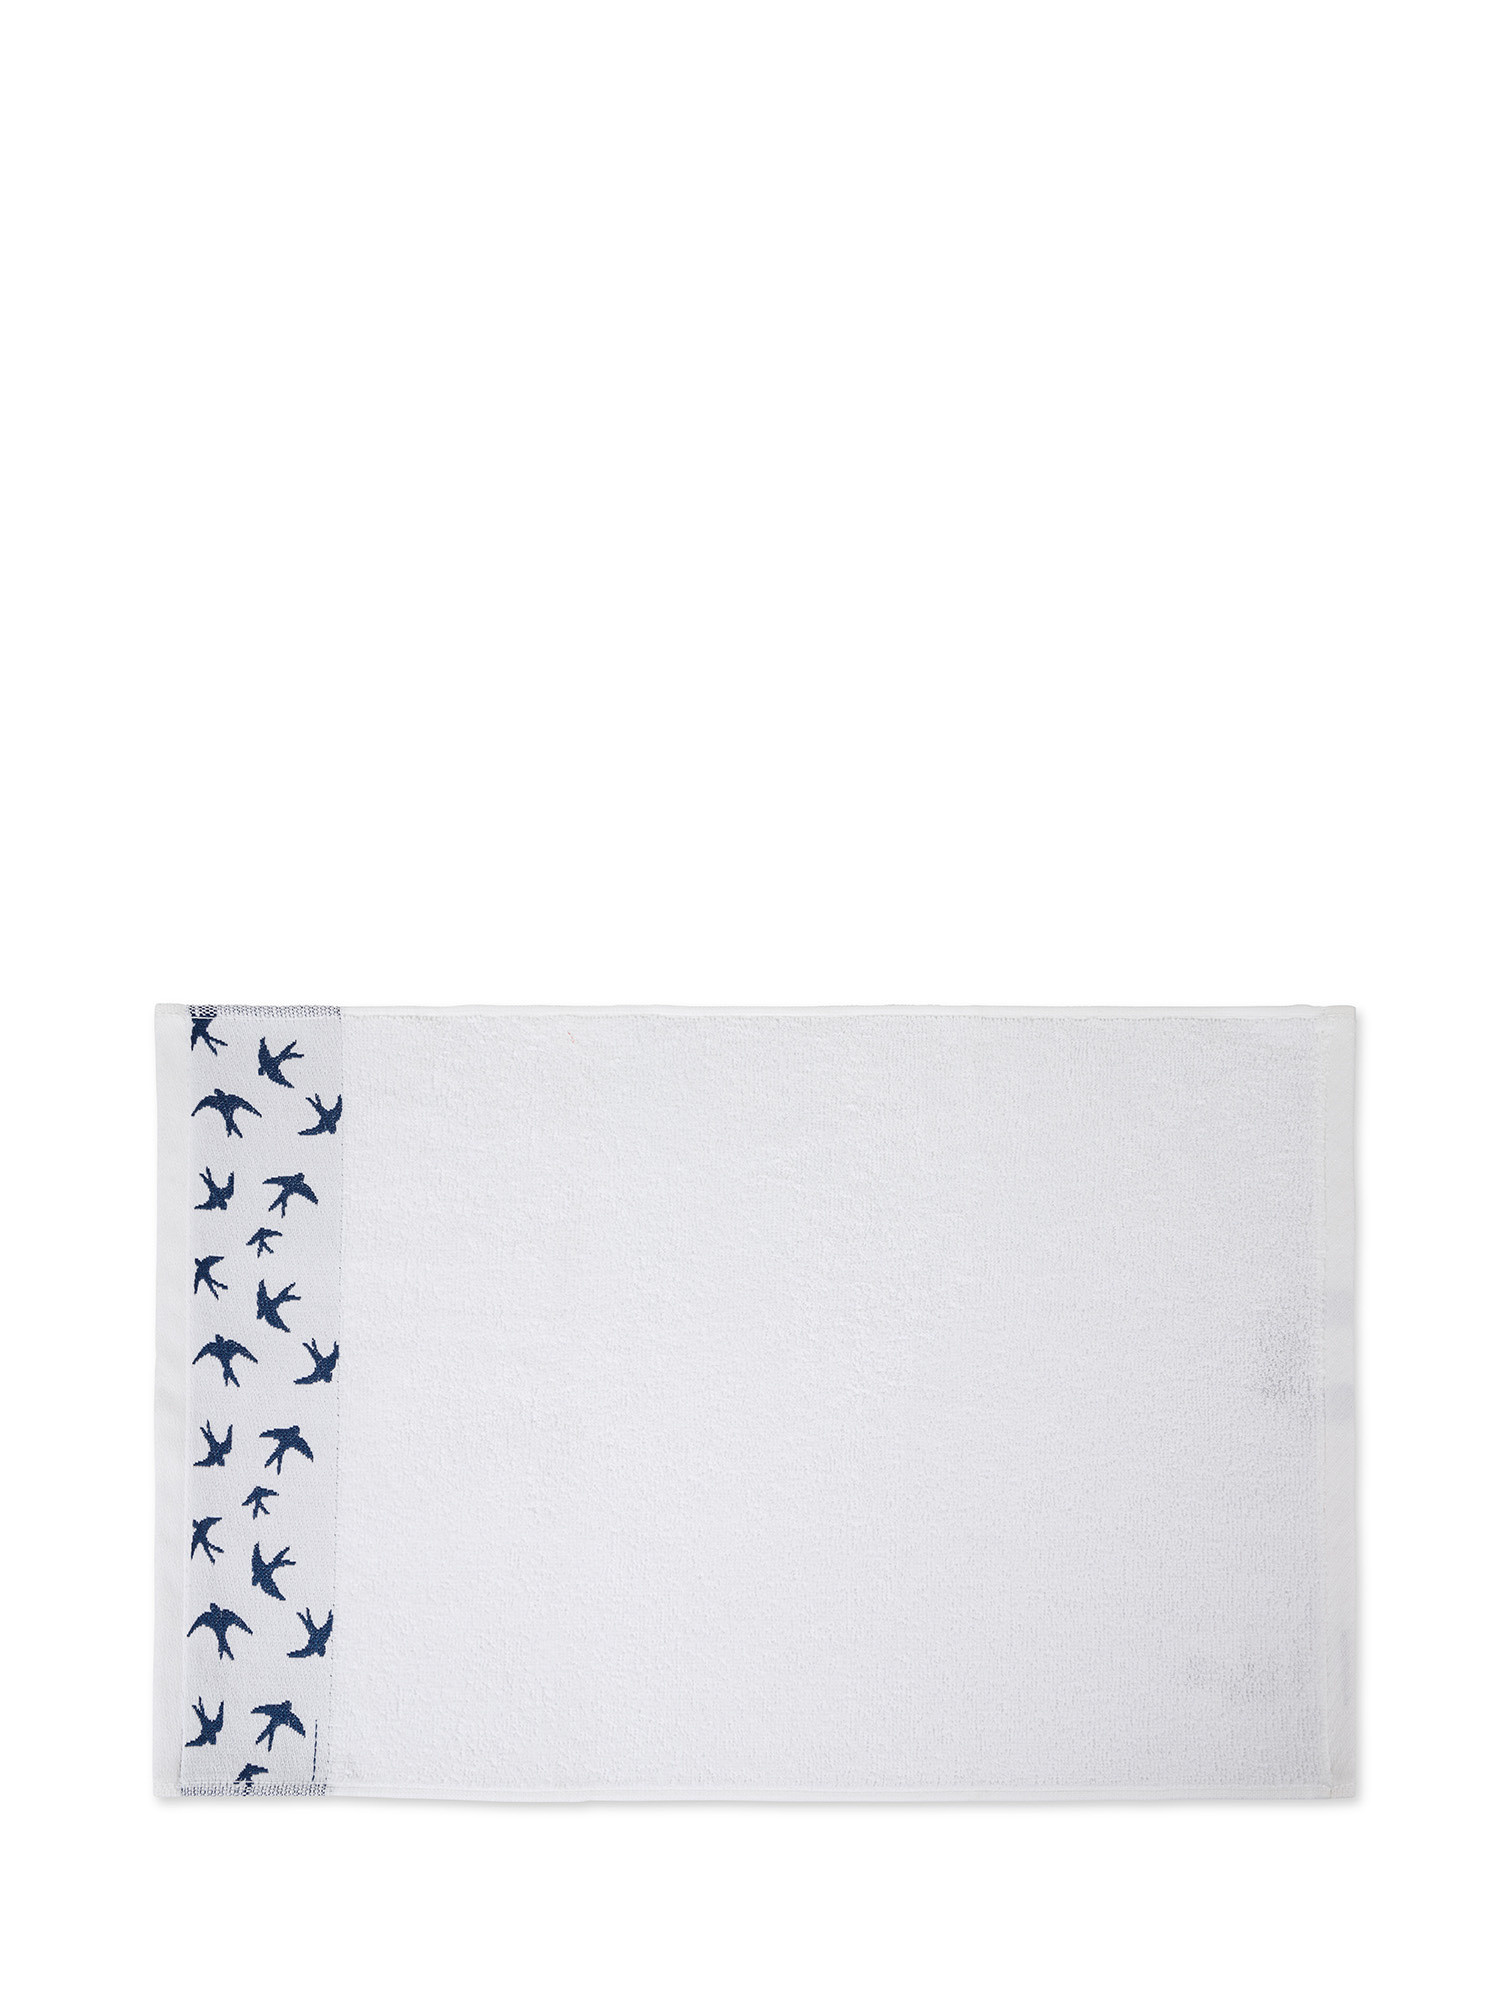 Asciugamano in spugna di puro cotone con ricamo rondini, Bianco, large image number 1